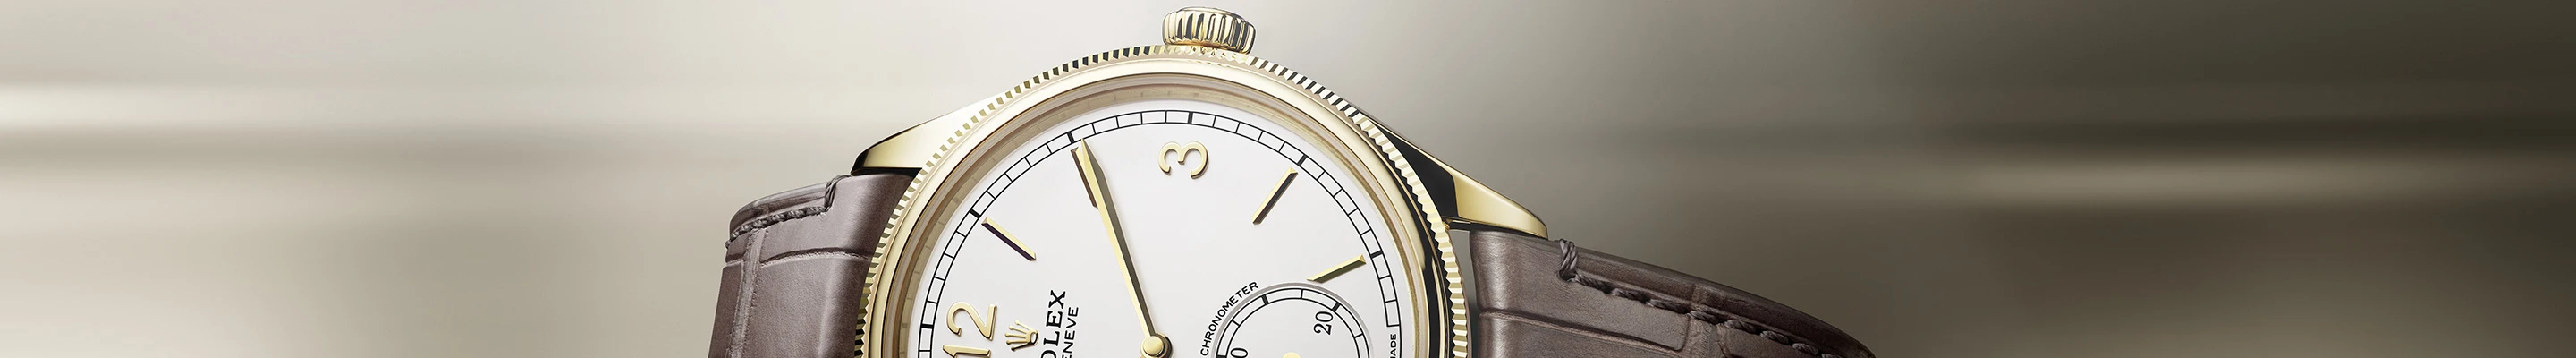 1908 | Rolex Official Retailer - Srichai Watch